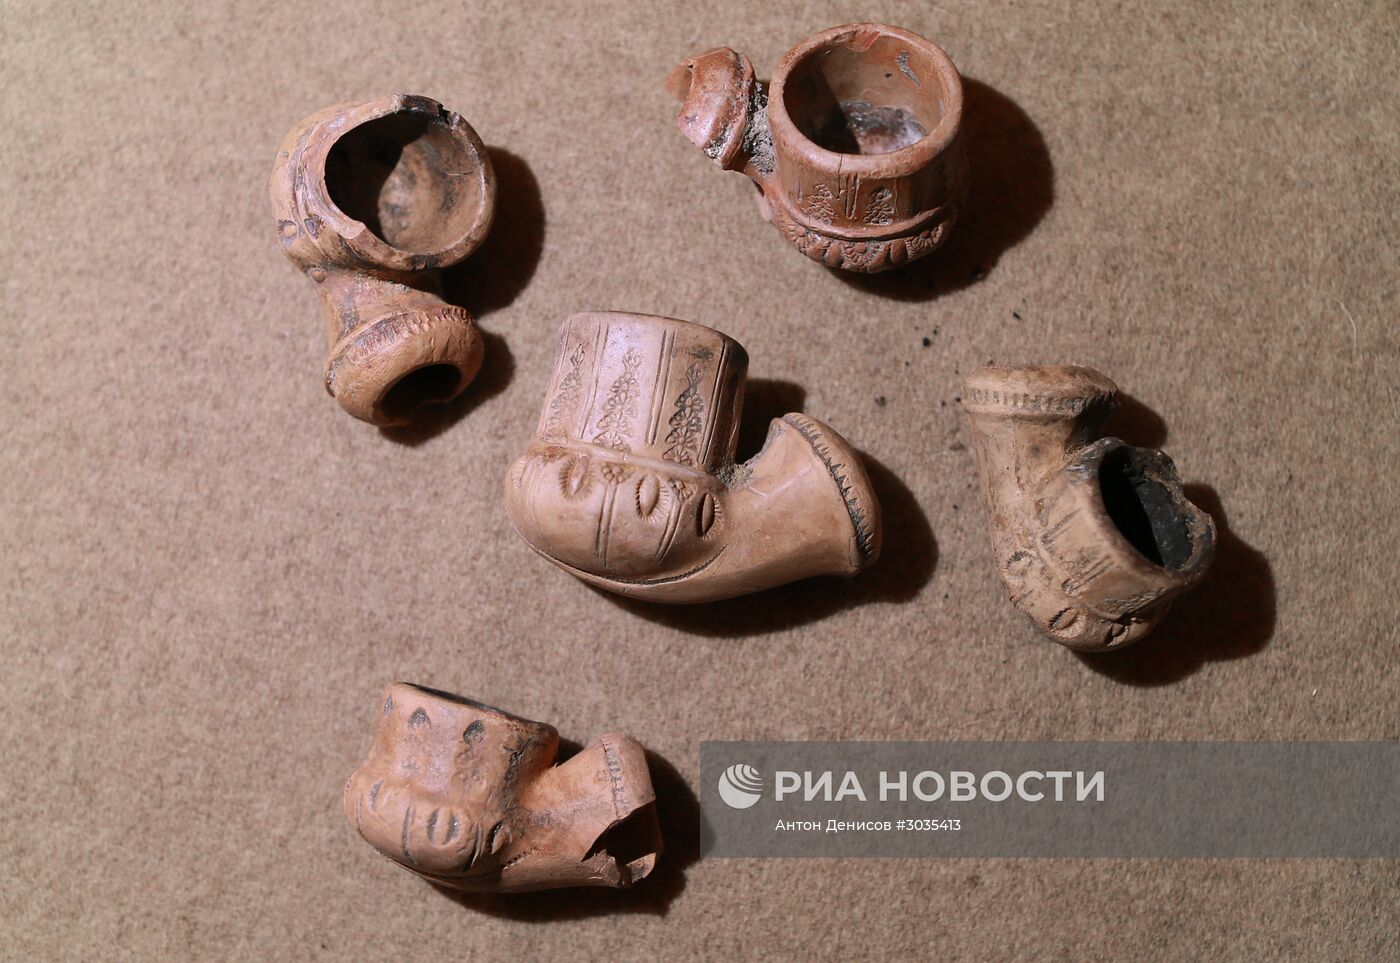 Презентация археологических находок с раскопок на Берсеневской набережной в Москве